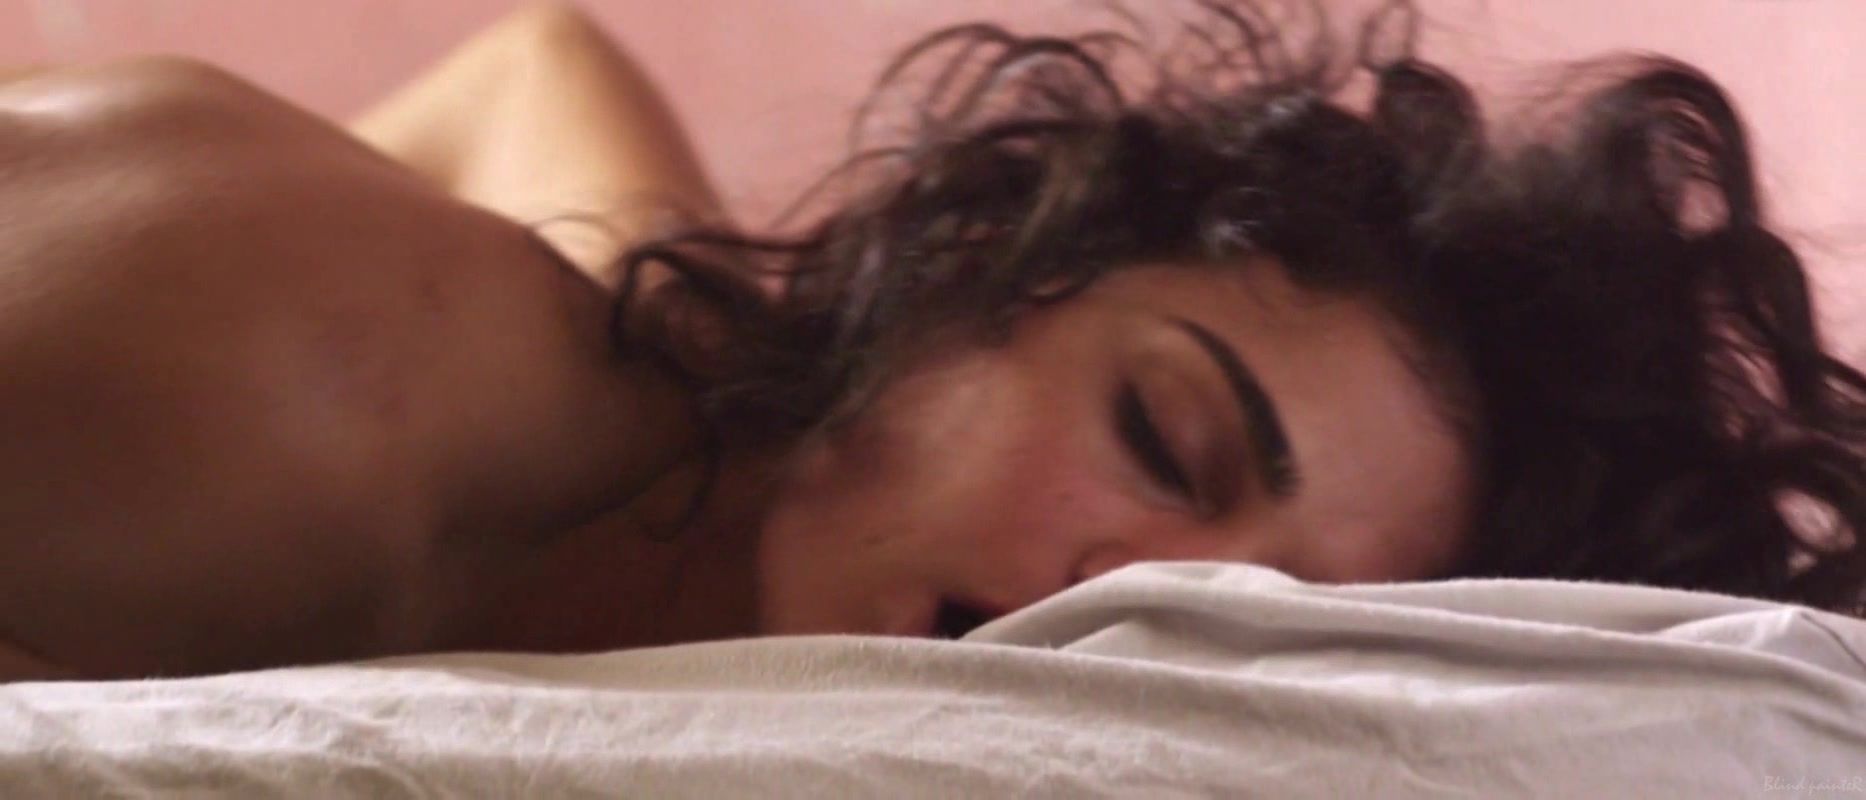 Gay Broken Sex Scene Fabiola's Buzim - Eu Queria Ser Arrebatada, Amordacada e, nas minhas costas, Tatuada (2015) Gagging - 1